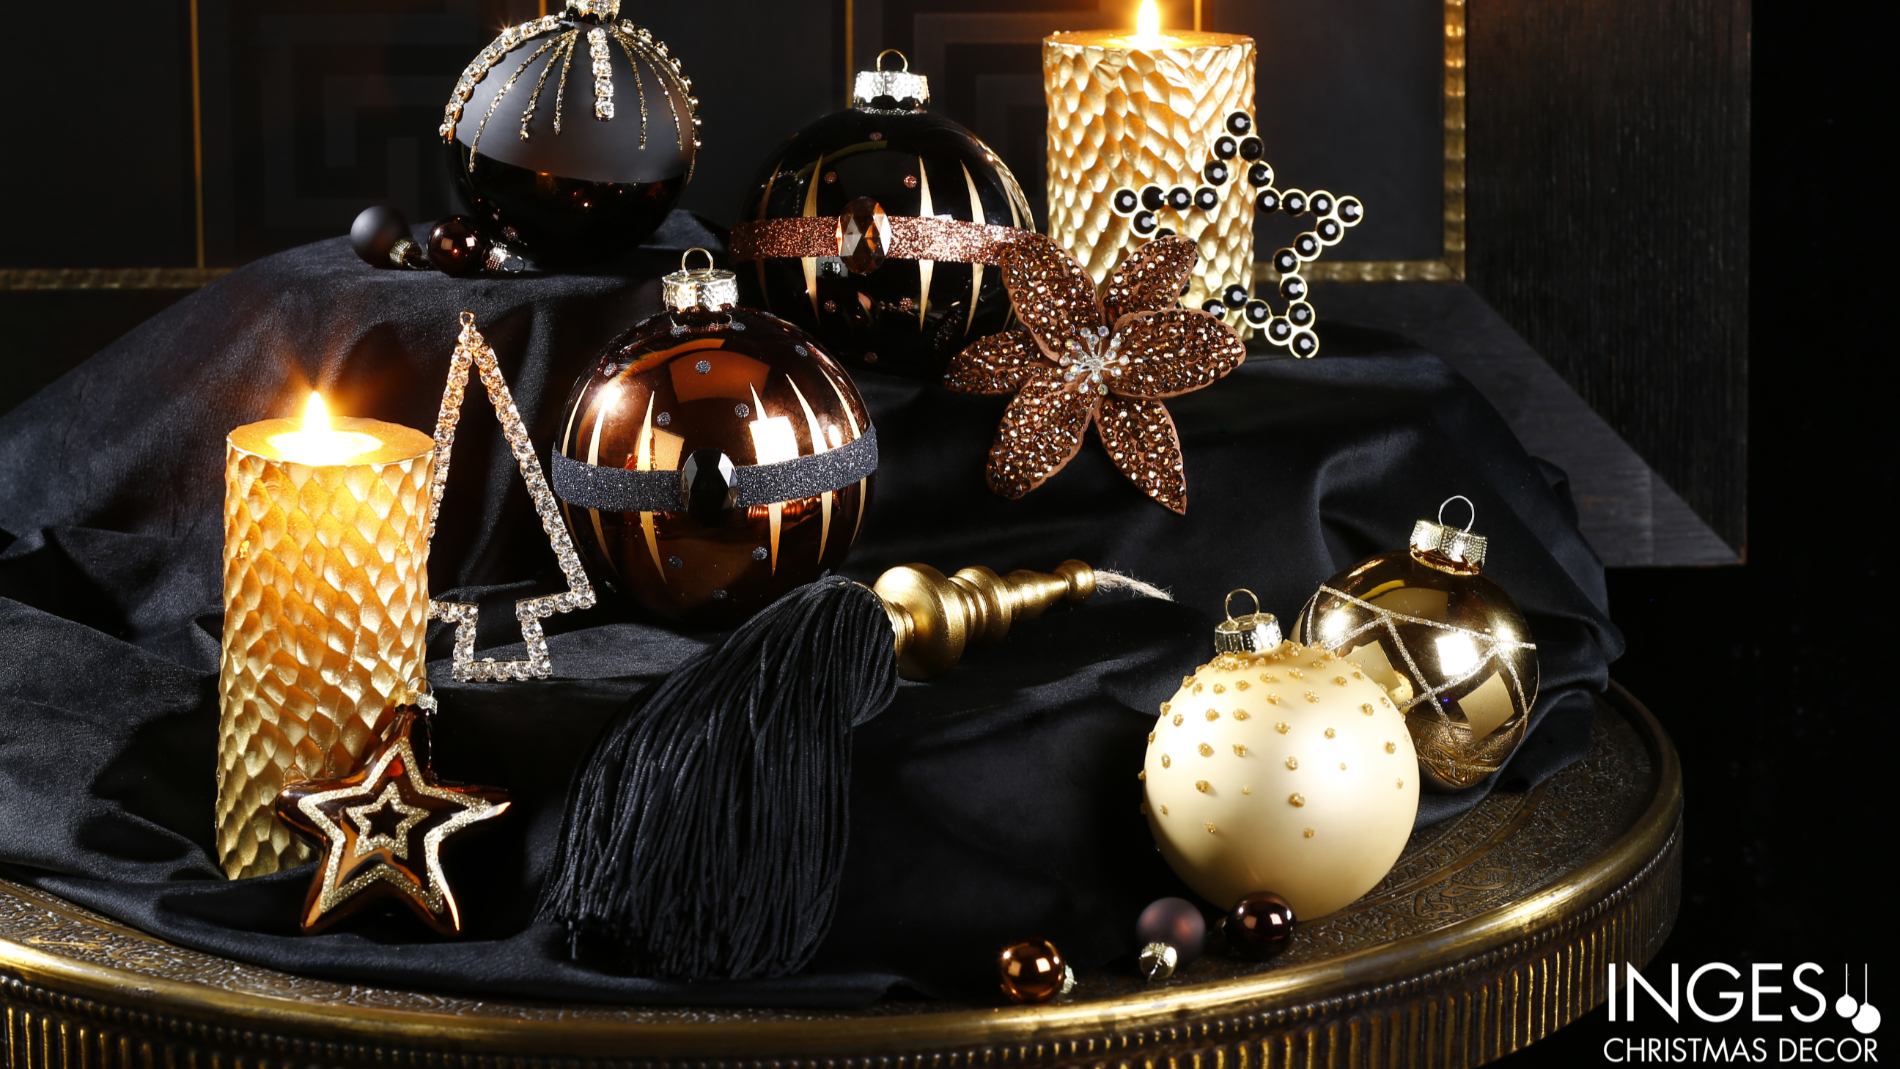 Timeless Luxury zeigt eine elegante Kombination aus Schwwarz, Braun und Gold. Foto: Inge’s Christmas Decor